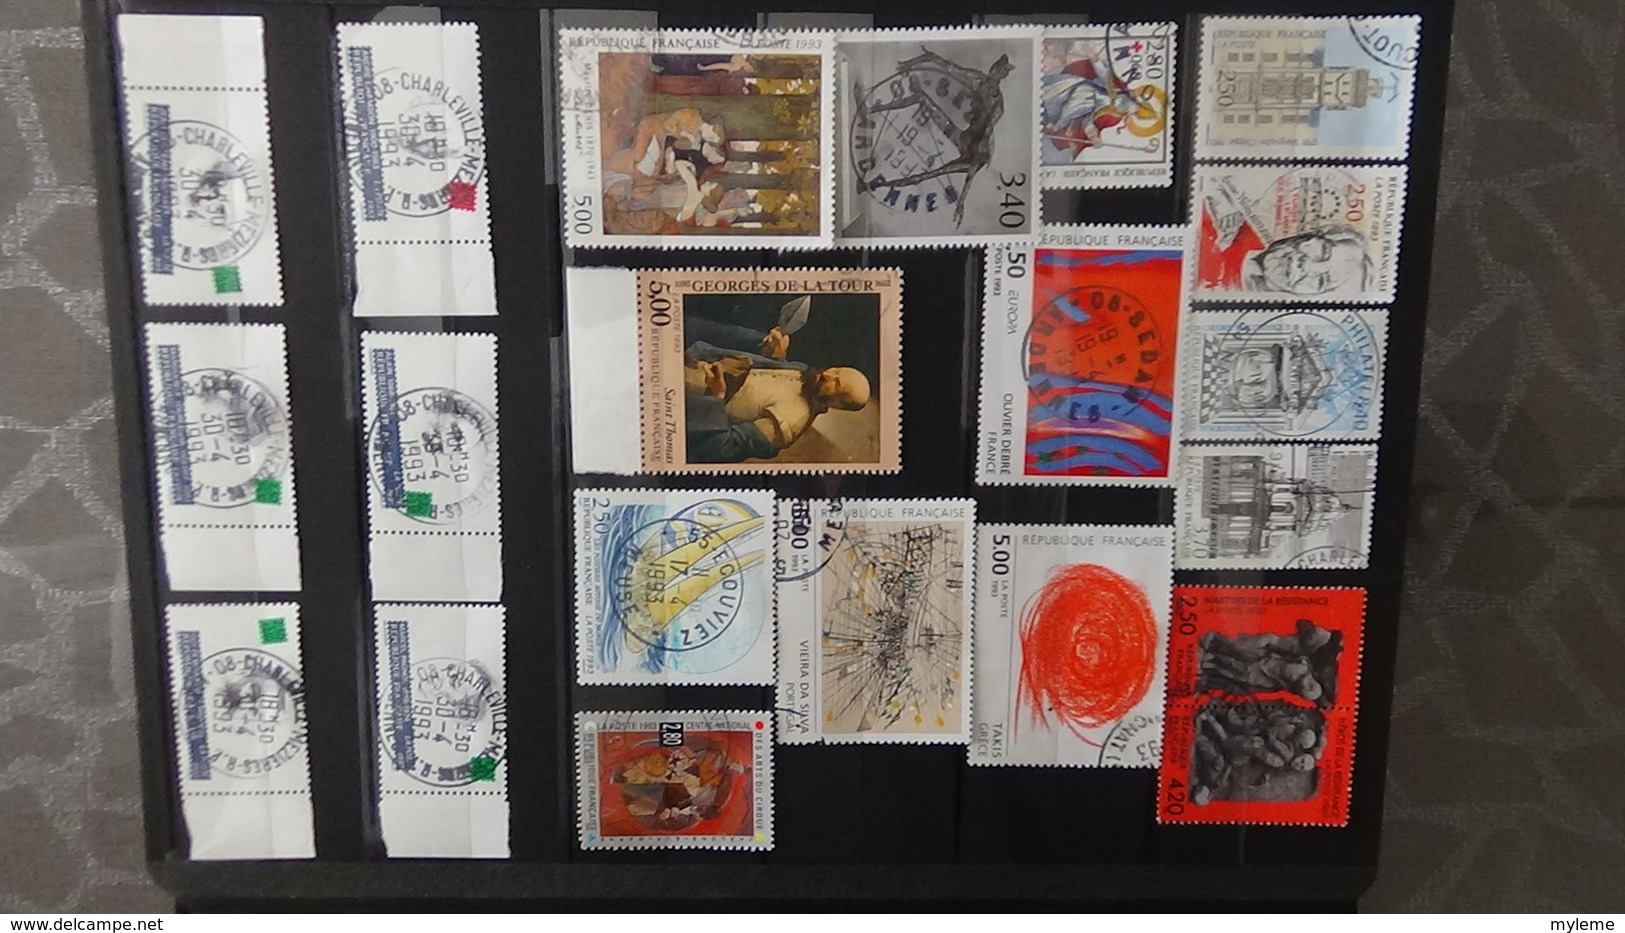 Collection de timbres, carnets, blocs de France avec oblitérations soignées. A saisir !!!